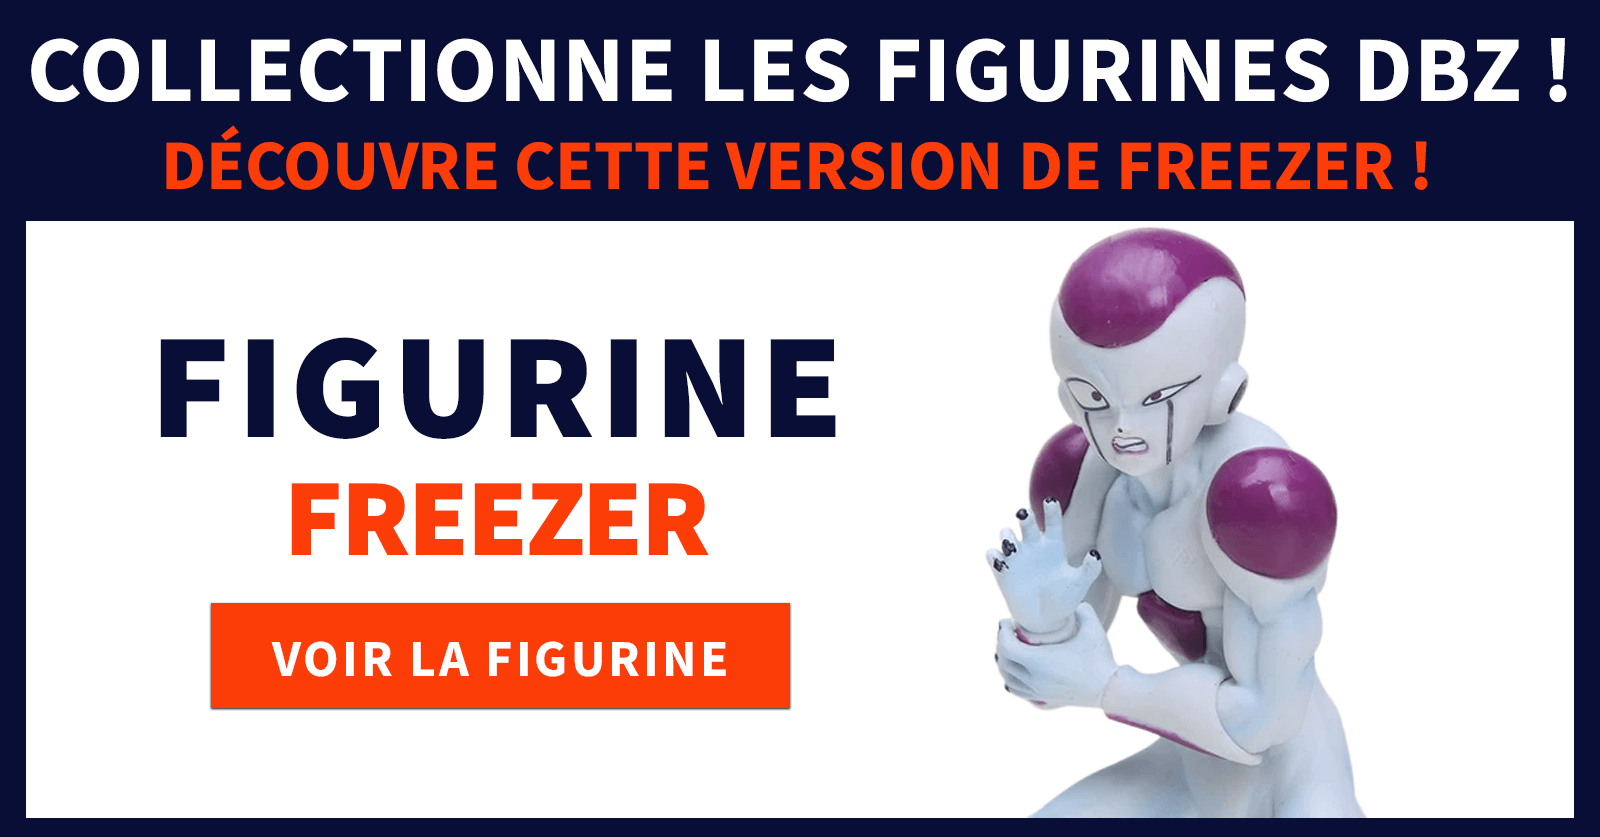 freezer dbz figurine